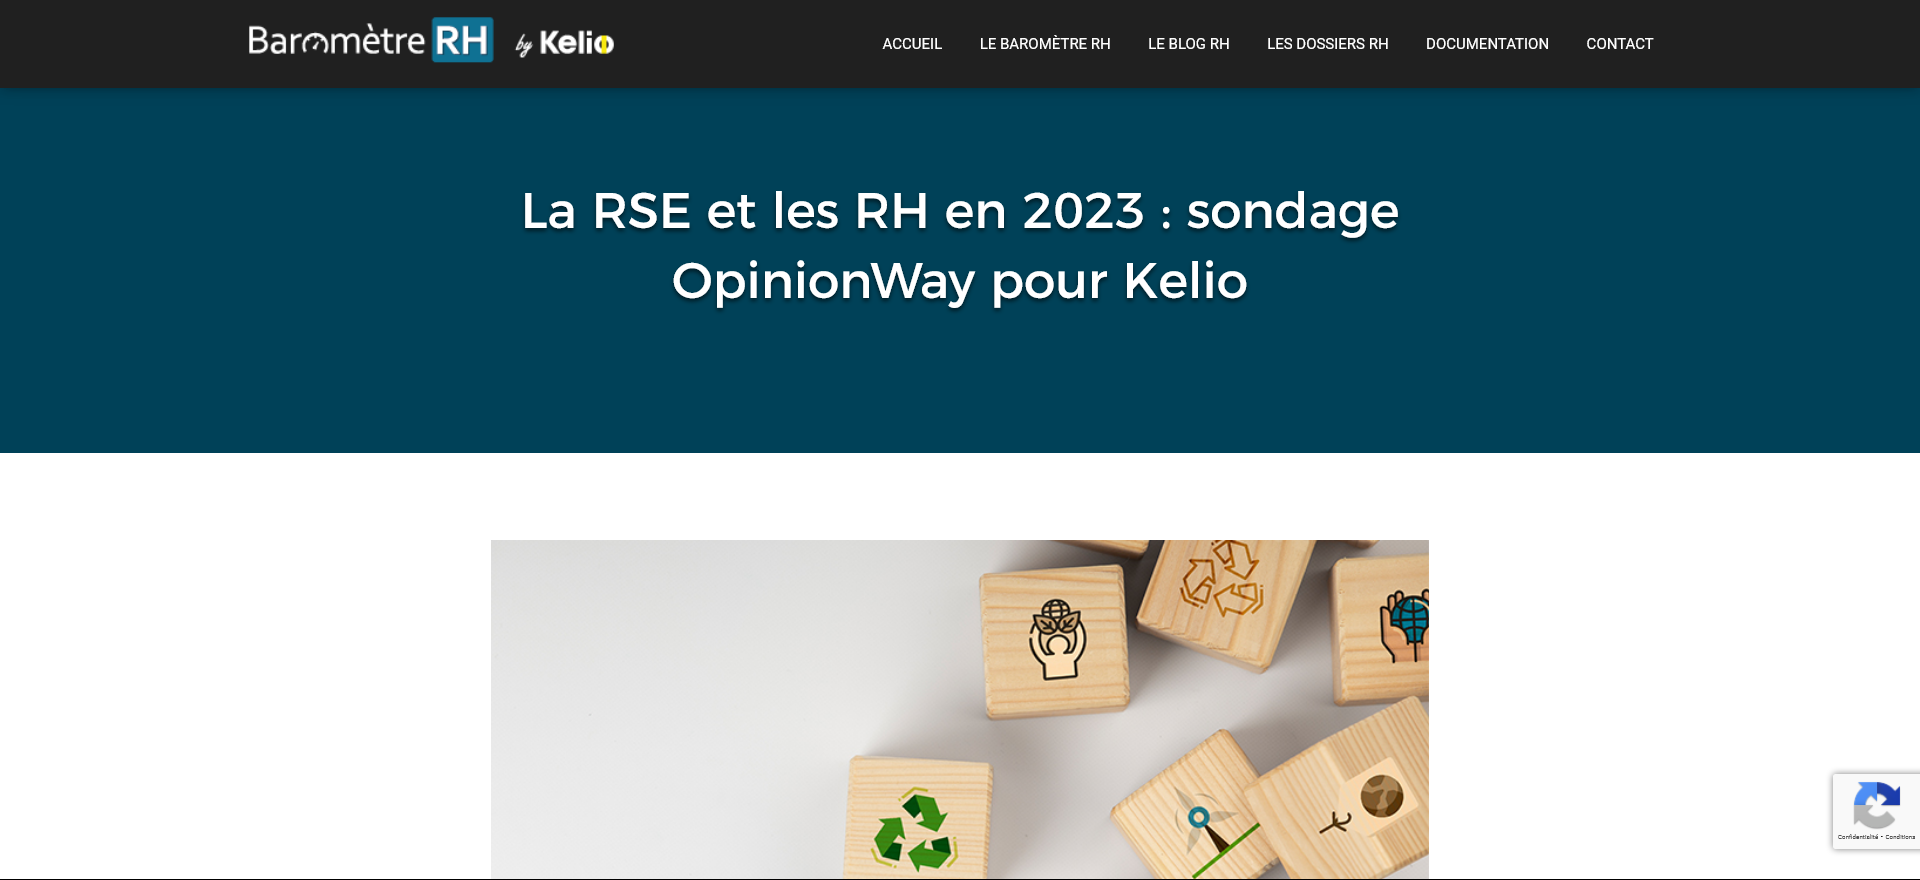 Enquête OpinionWay pour Kelio : RH &RSE - pour 77% des salariés une entreprise qui prend en compte la RSE est plus attractive